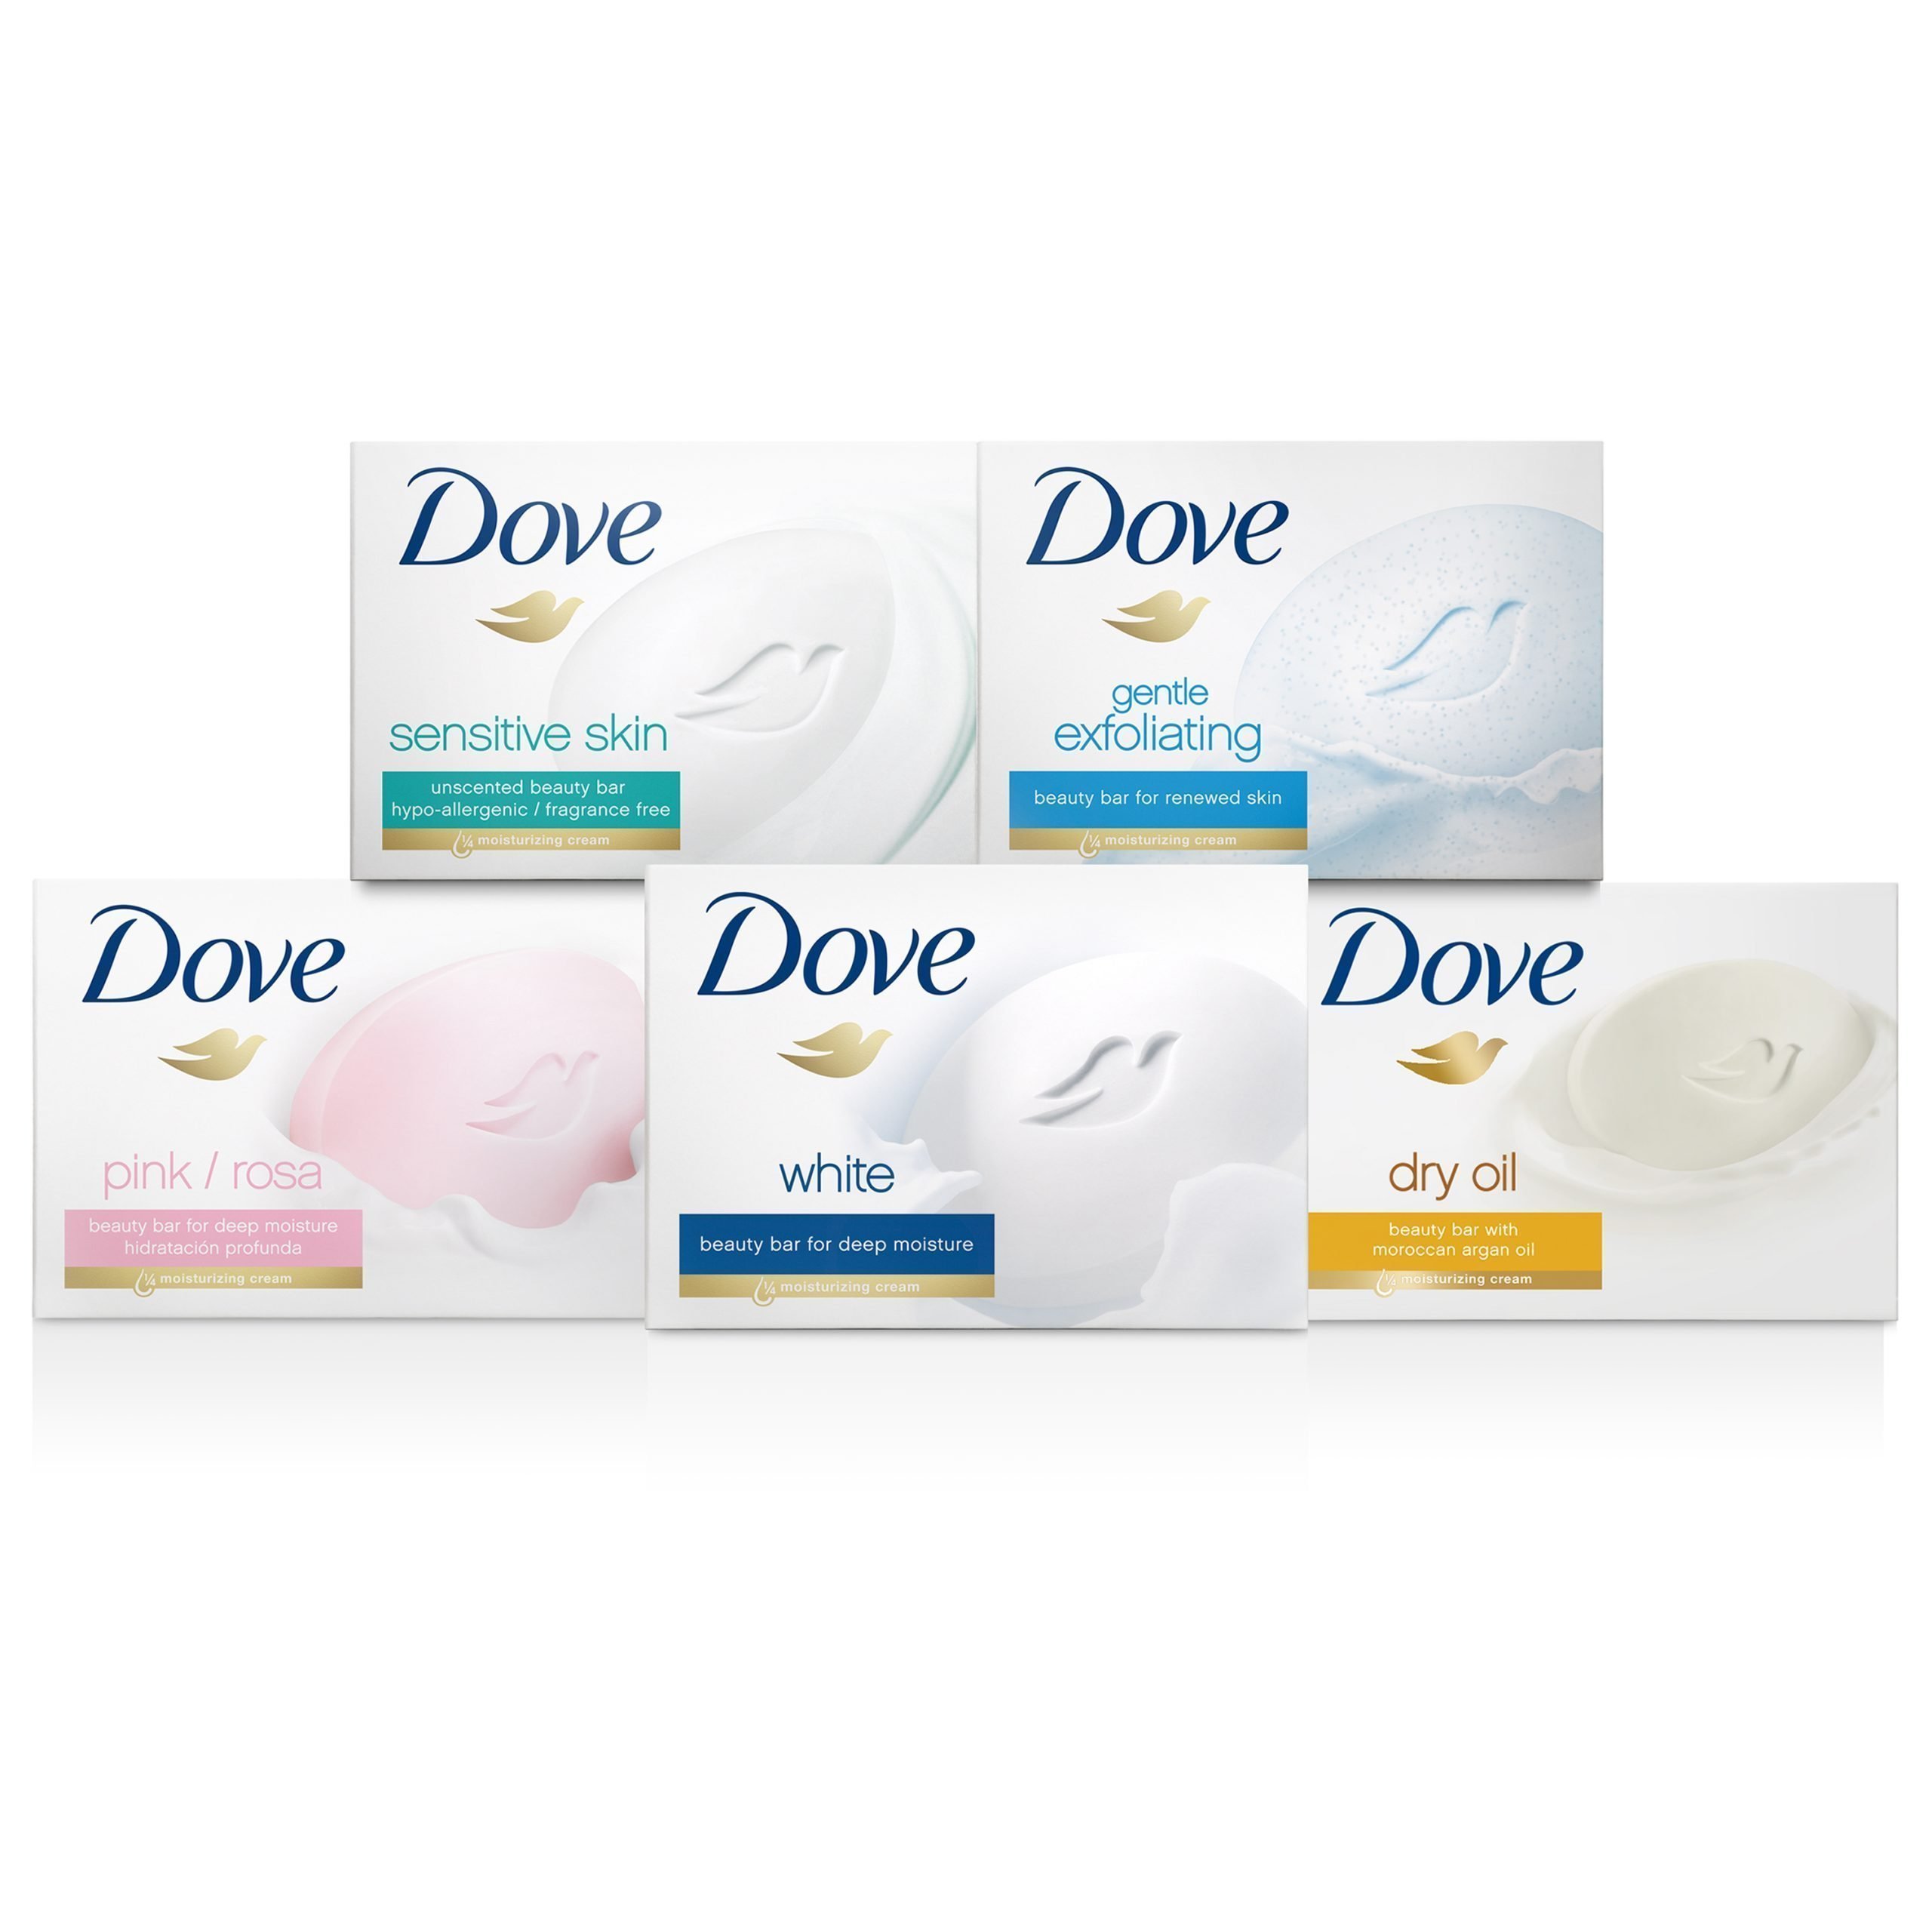 Туалетная мыло дав. Мыло dove Beauty Cream Bar Deep Moisture. Dove sensitive Skin Beauty Bar. Dove Beauty Cream Bar мыло туалетное для питания и увлажнения 135гр. Dove sensitive Skin мыло.